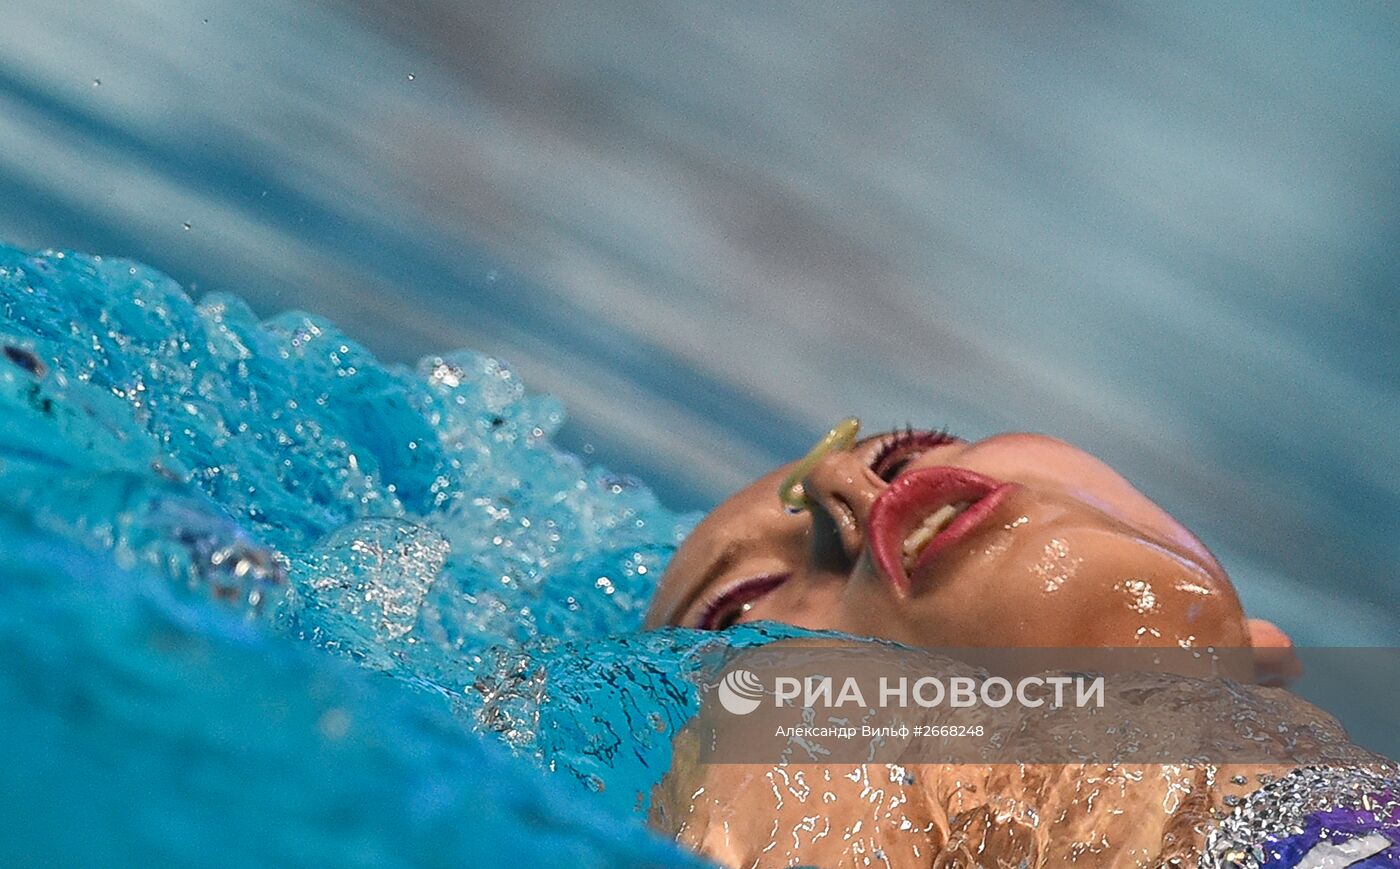 Чемпионат мира FINA 2015. Синхронное плавание. Соло. Произвольная программа. Финал